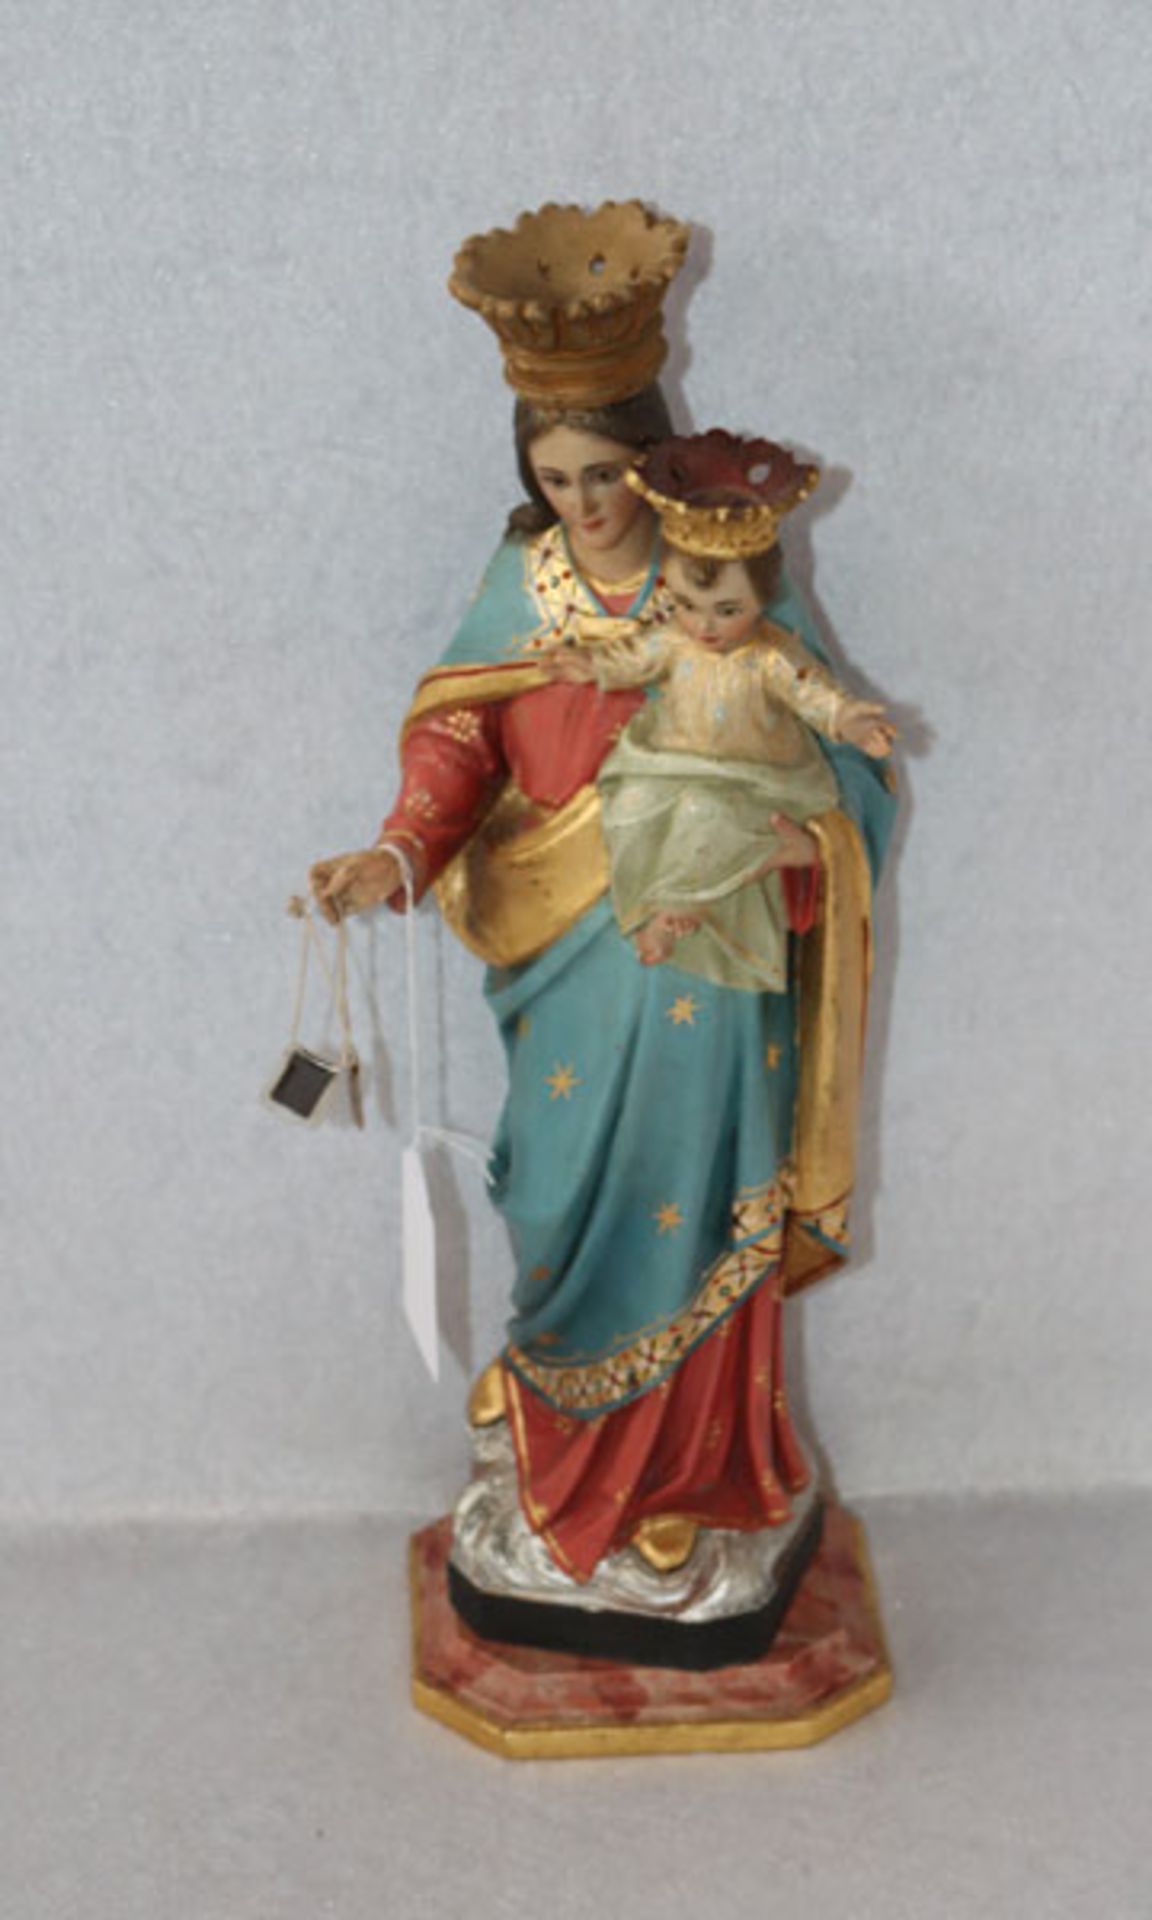 Holz Figurenskulptur 'Maria mit Kind', farbig gefaßt, auf marmorierten Holzsockel, leicht